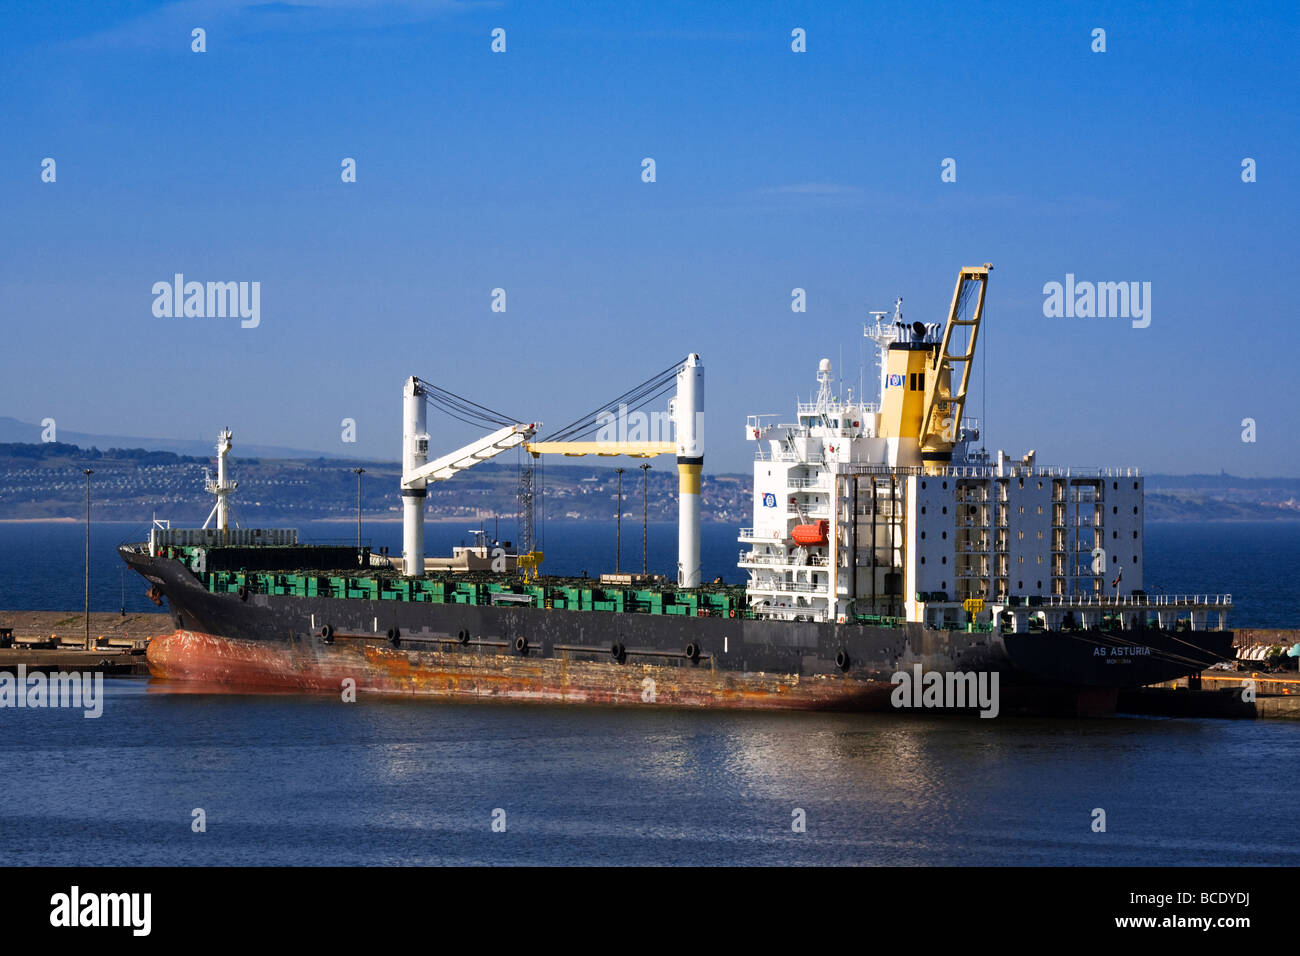 Frachtschiff AS Asturia gefesselt am Hafen von Leith Docks, Edinburgh, Schottland. Stockfoto